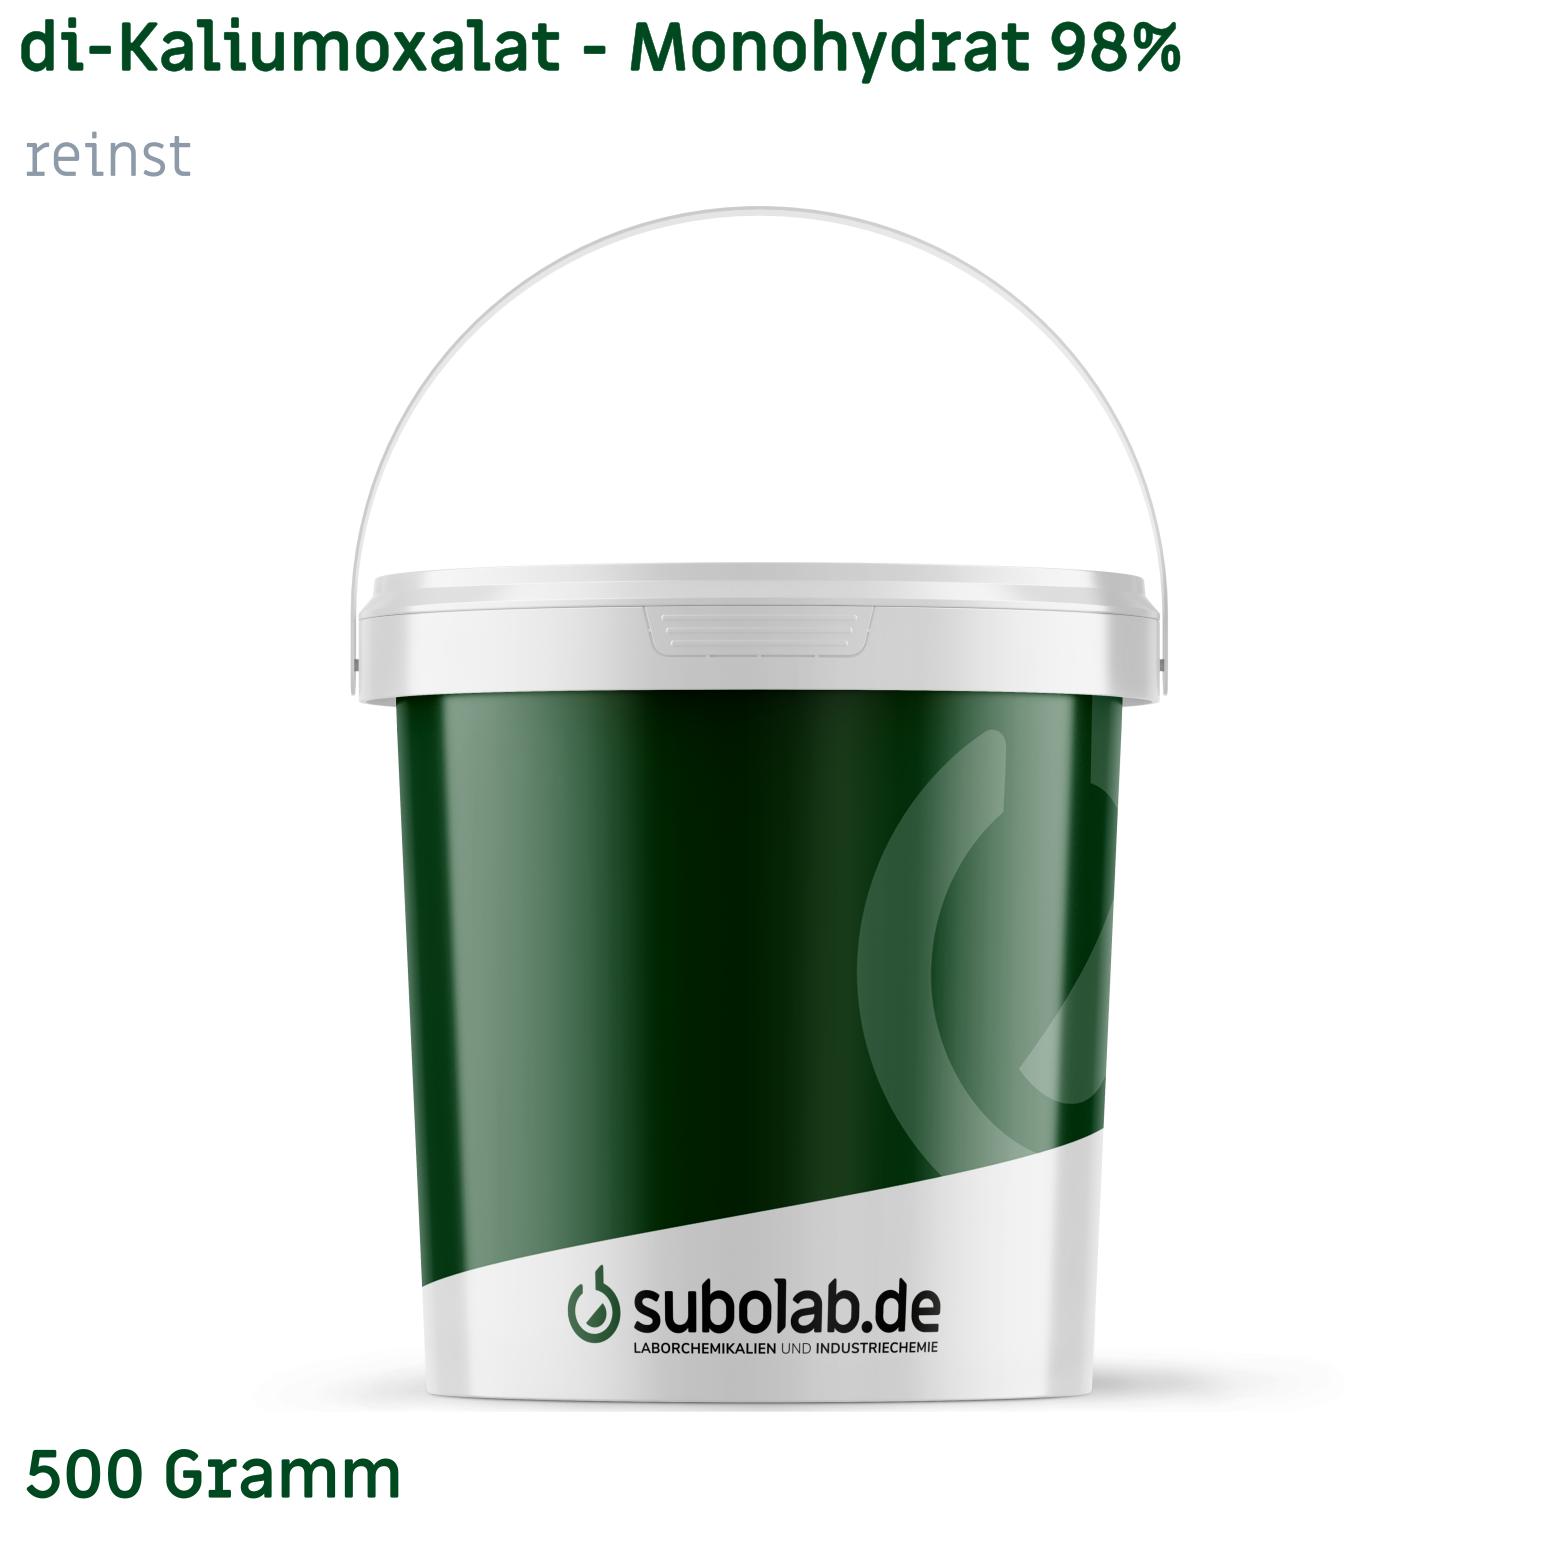 Bild von di-Kaliumoxalat - Monohydrat 98% reinst (500 Gramm)